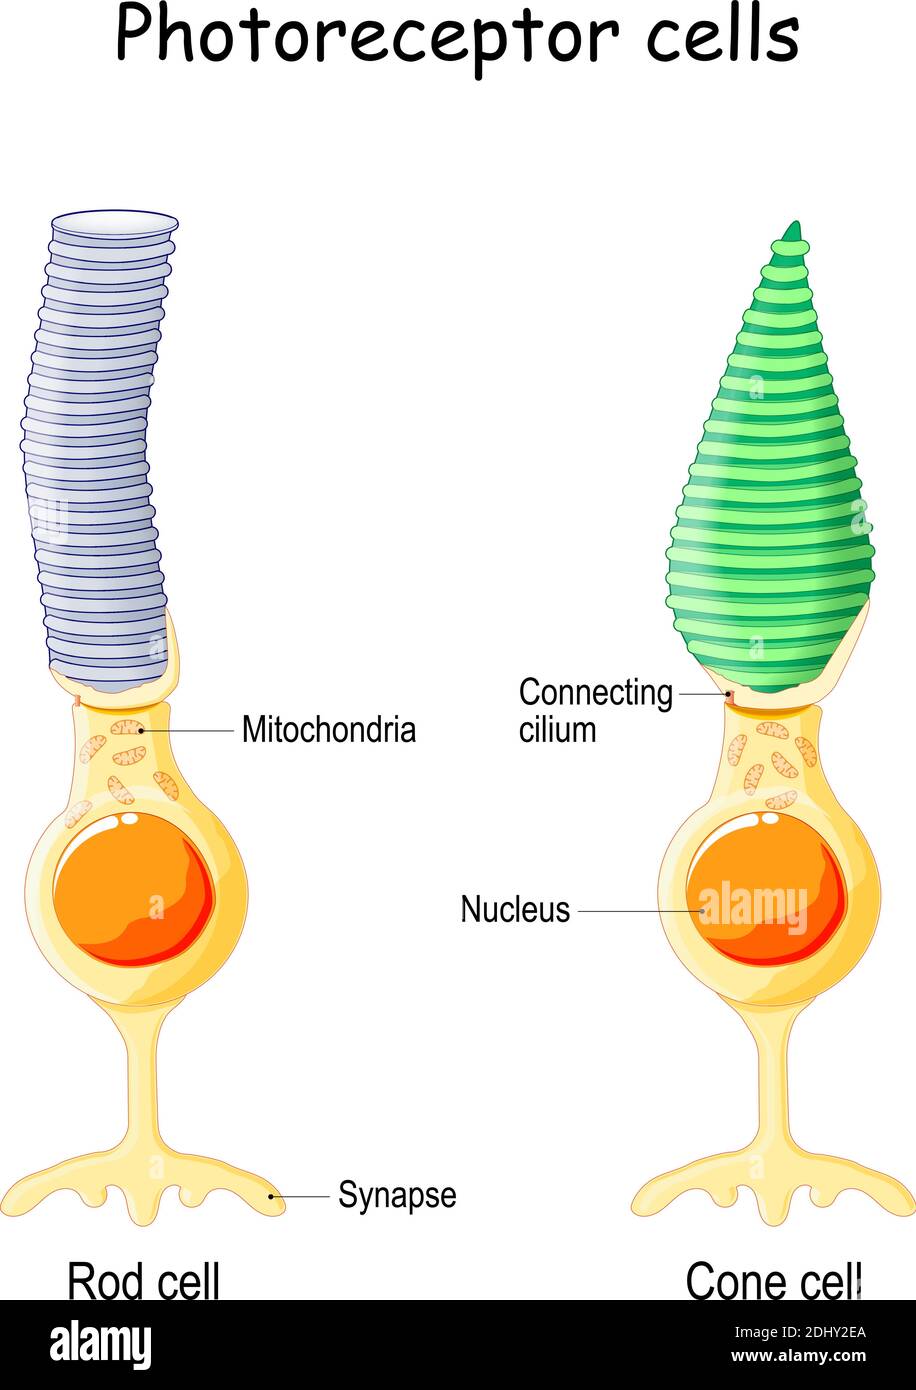 Anatomia del fotorecettore. Cellula di una retina nell'occhio. Le cellule coniche rispondono alla visione a colori e inviano segnali al cervello. Cella a barra Illustrazione Vettoriale